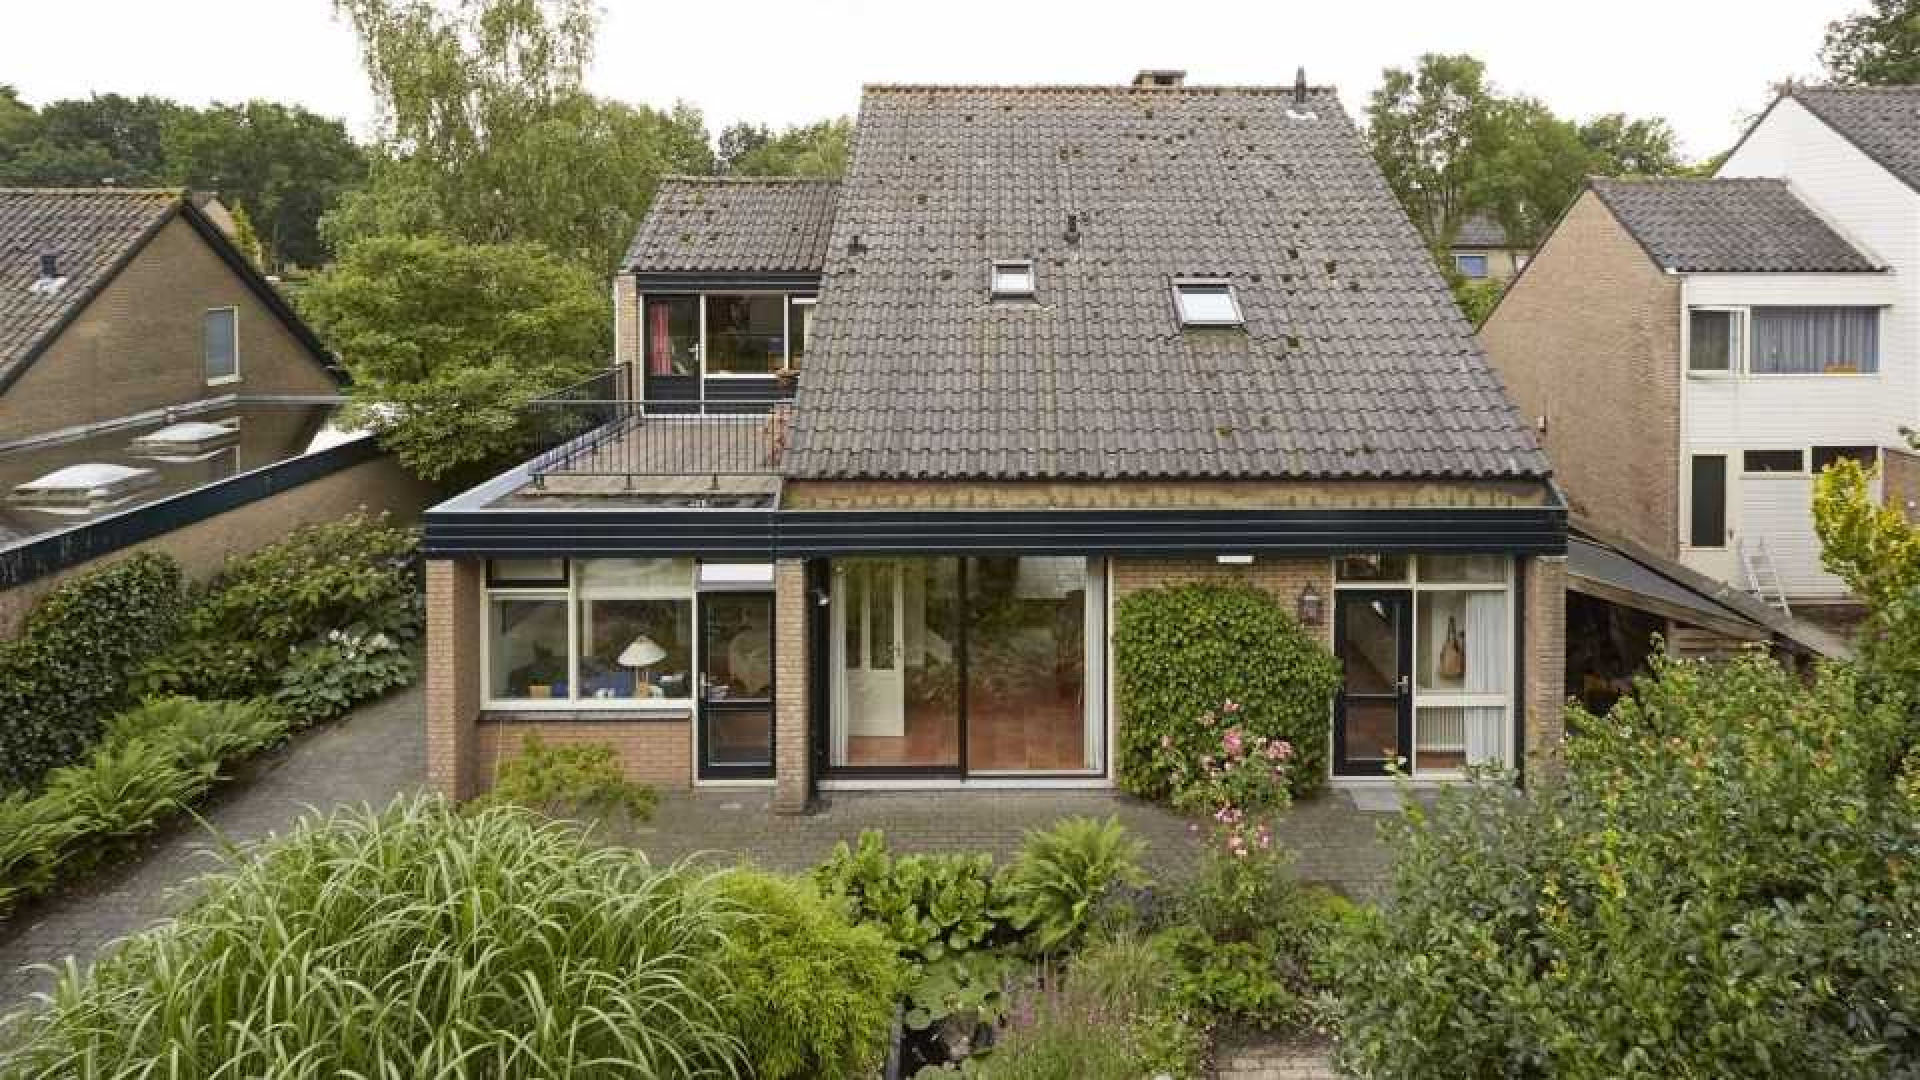 Voormalig NOS Journaal presentator Gijs Wanders zet zijn familiehuis te koop. Zie foto's 20